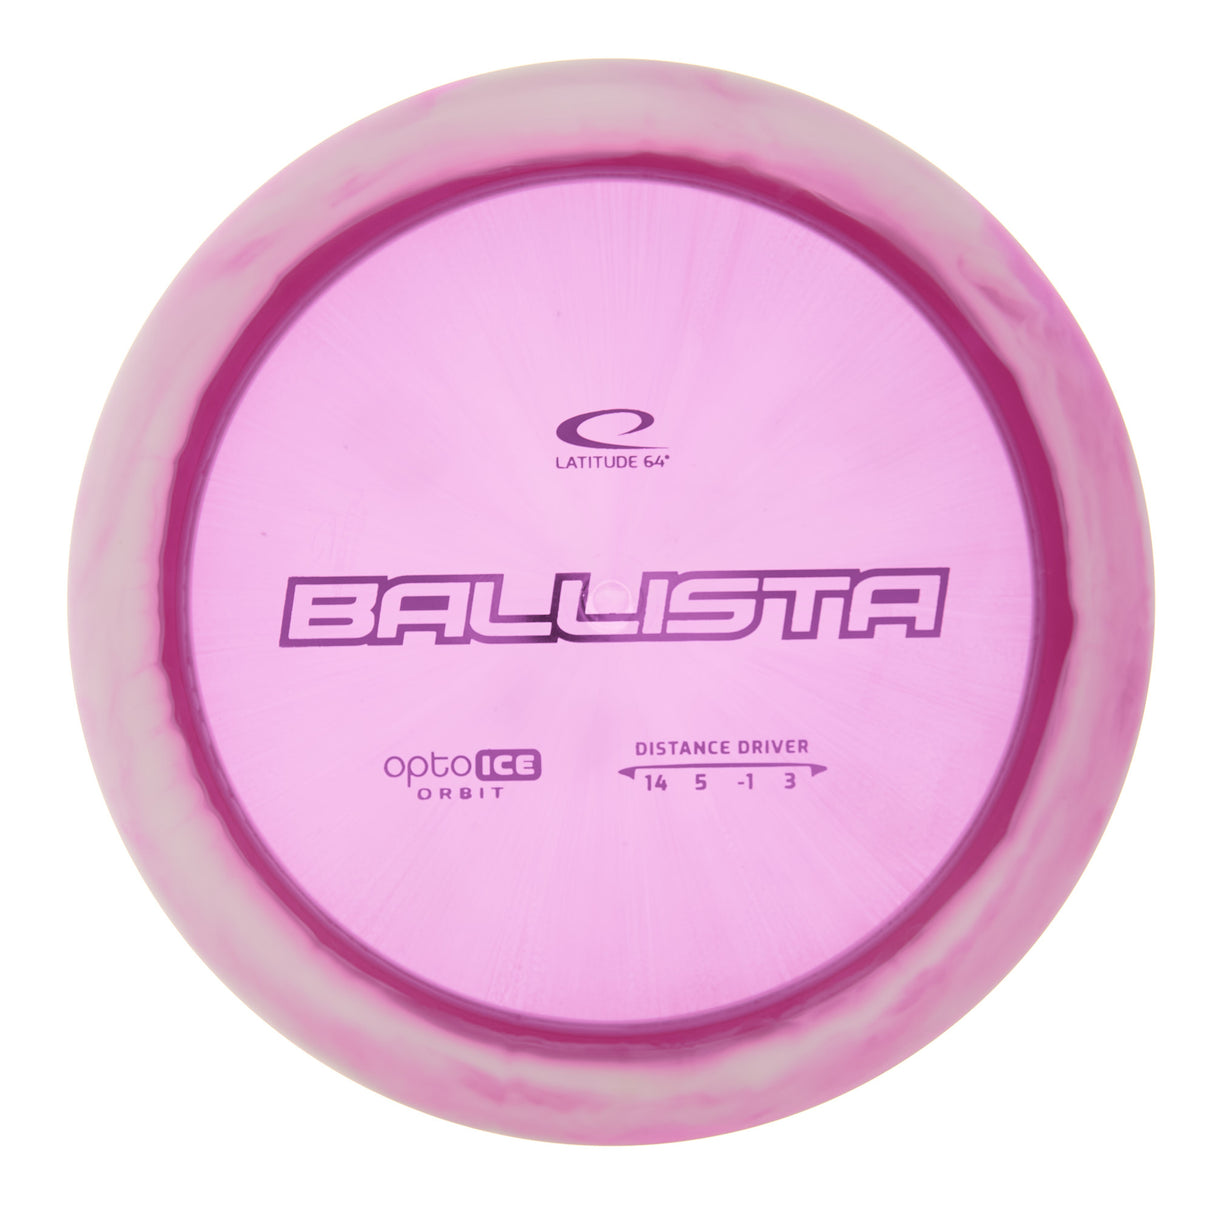 Latitude 64 Ballista - Opto Ice Orbit 174g | Style 0006